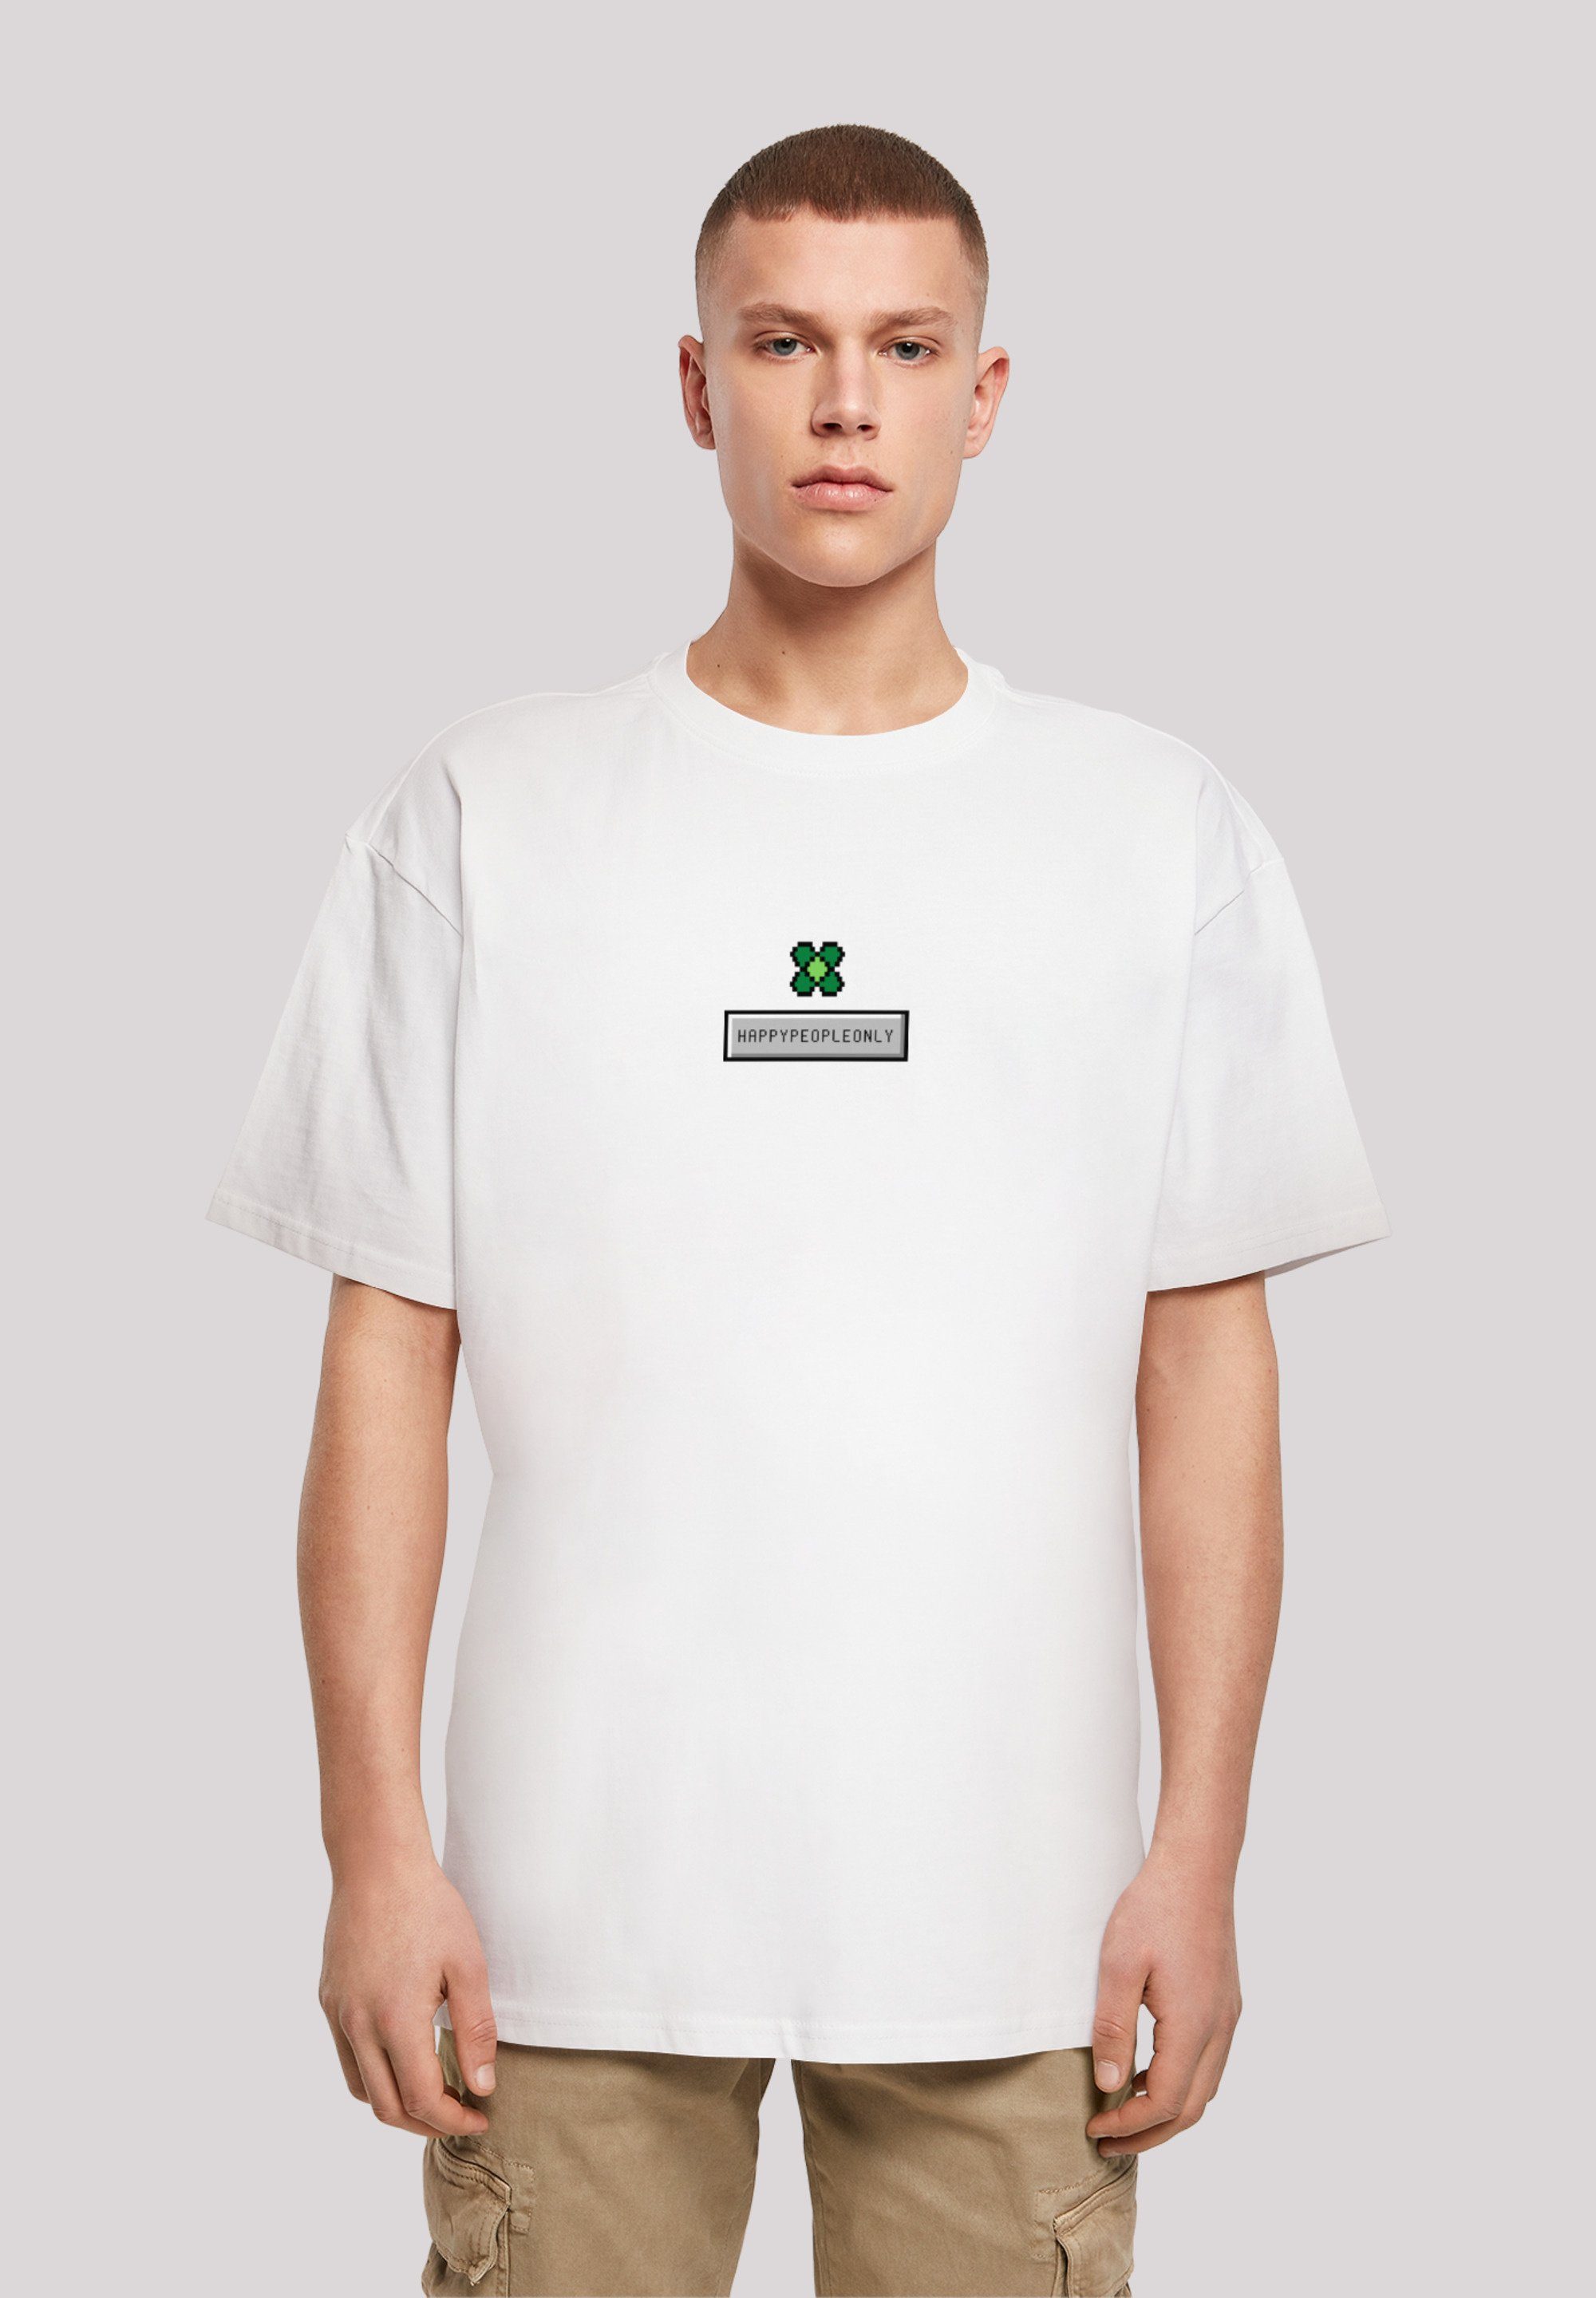 F4NT4STIC T-Shirt Silvester Happy Kleeblatt Year Pixel Print New weiß